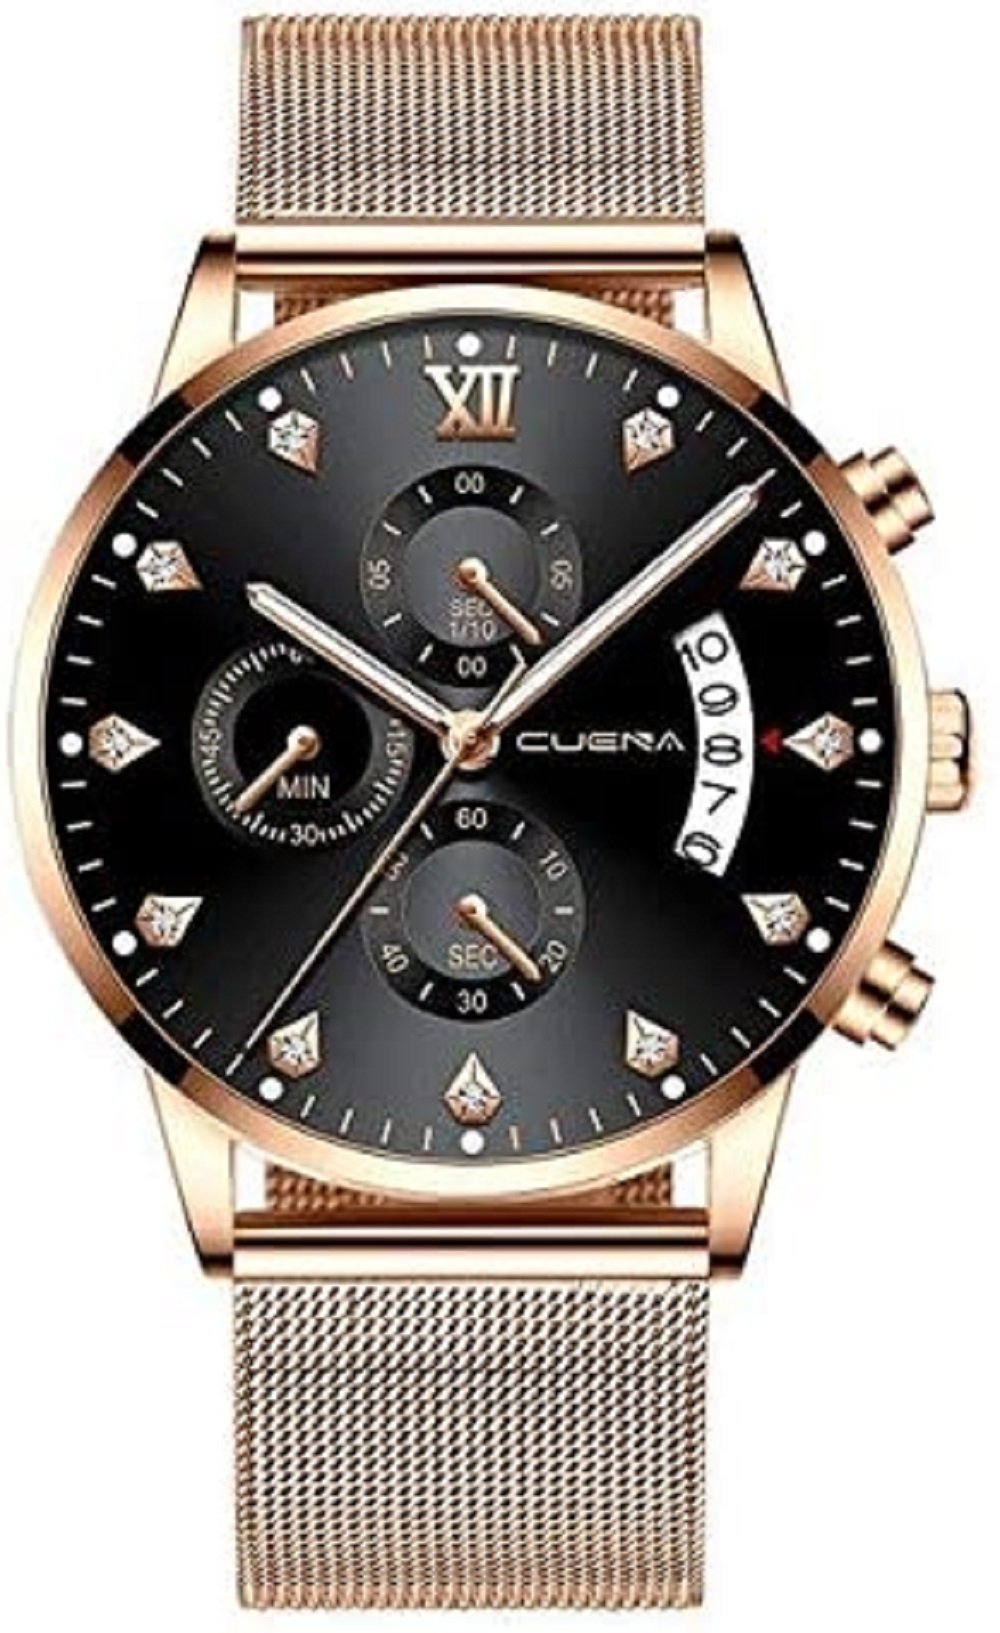 Relógio Magnum Feminino Ref: Ma28752t Clássico Mini Prateado Prata